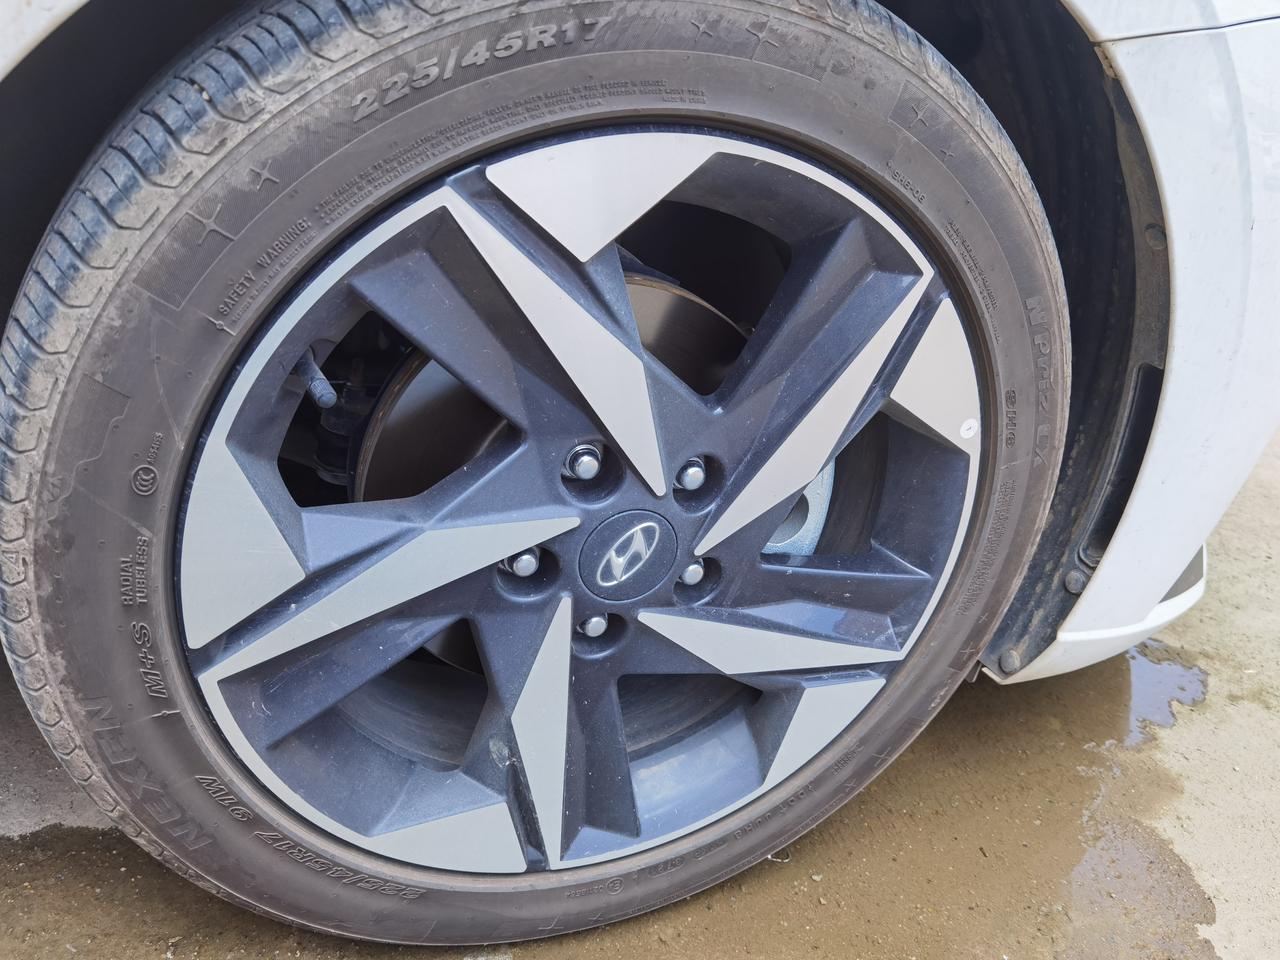 现代伊兰特 225/45R17  91w 的耐克森车胎鼓包了，在市面上都没有找到这个轮胎？是只有4s店才有吗